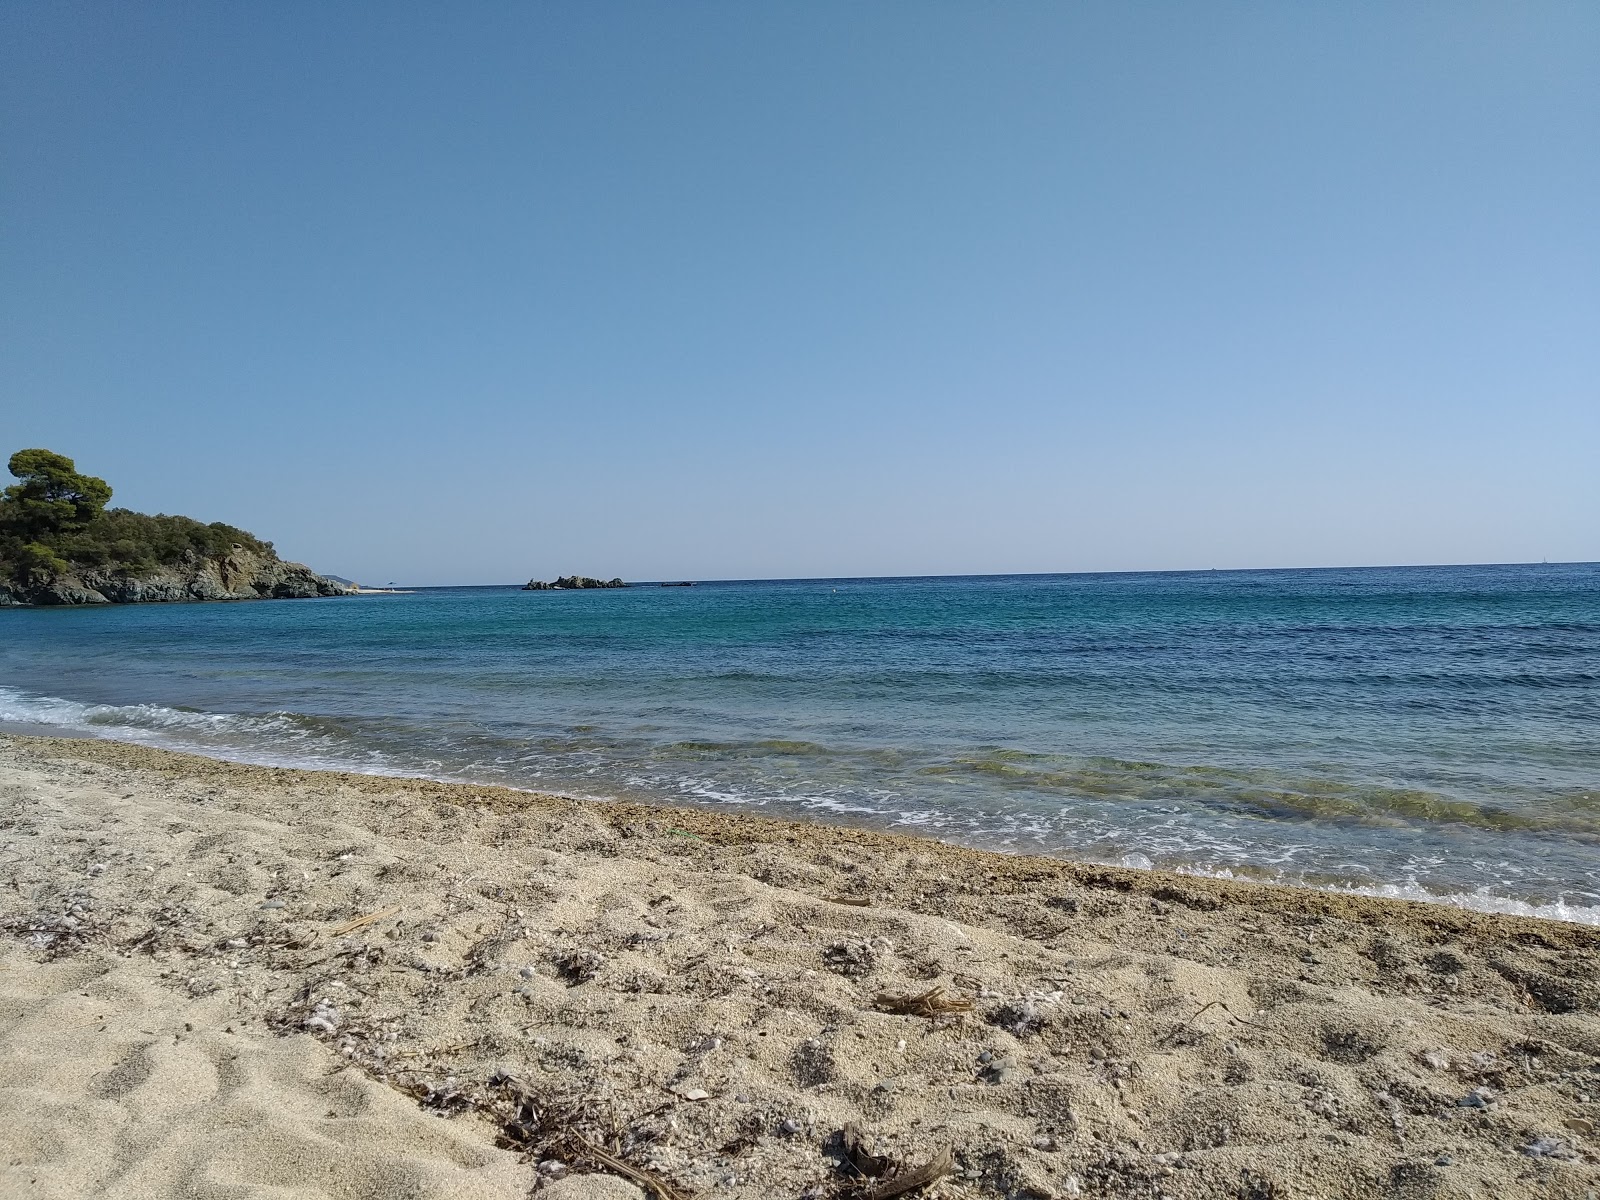 Azapiko beach III'in fotoğrafı geniş plaj ile birlikte